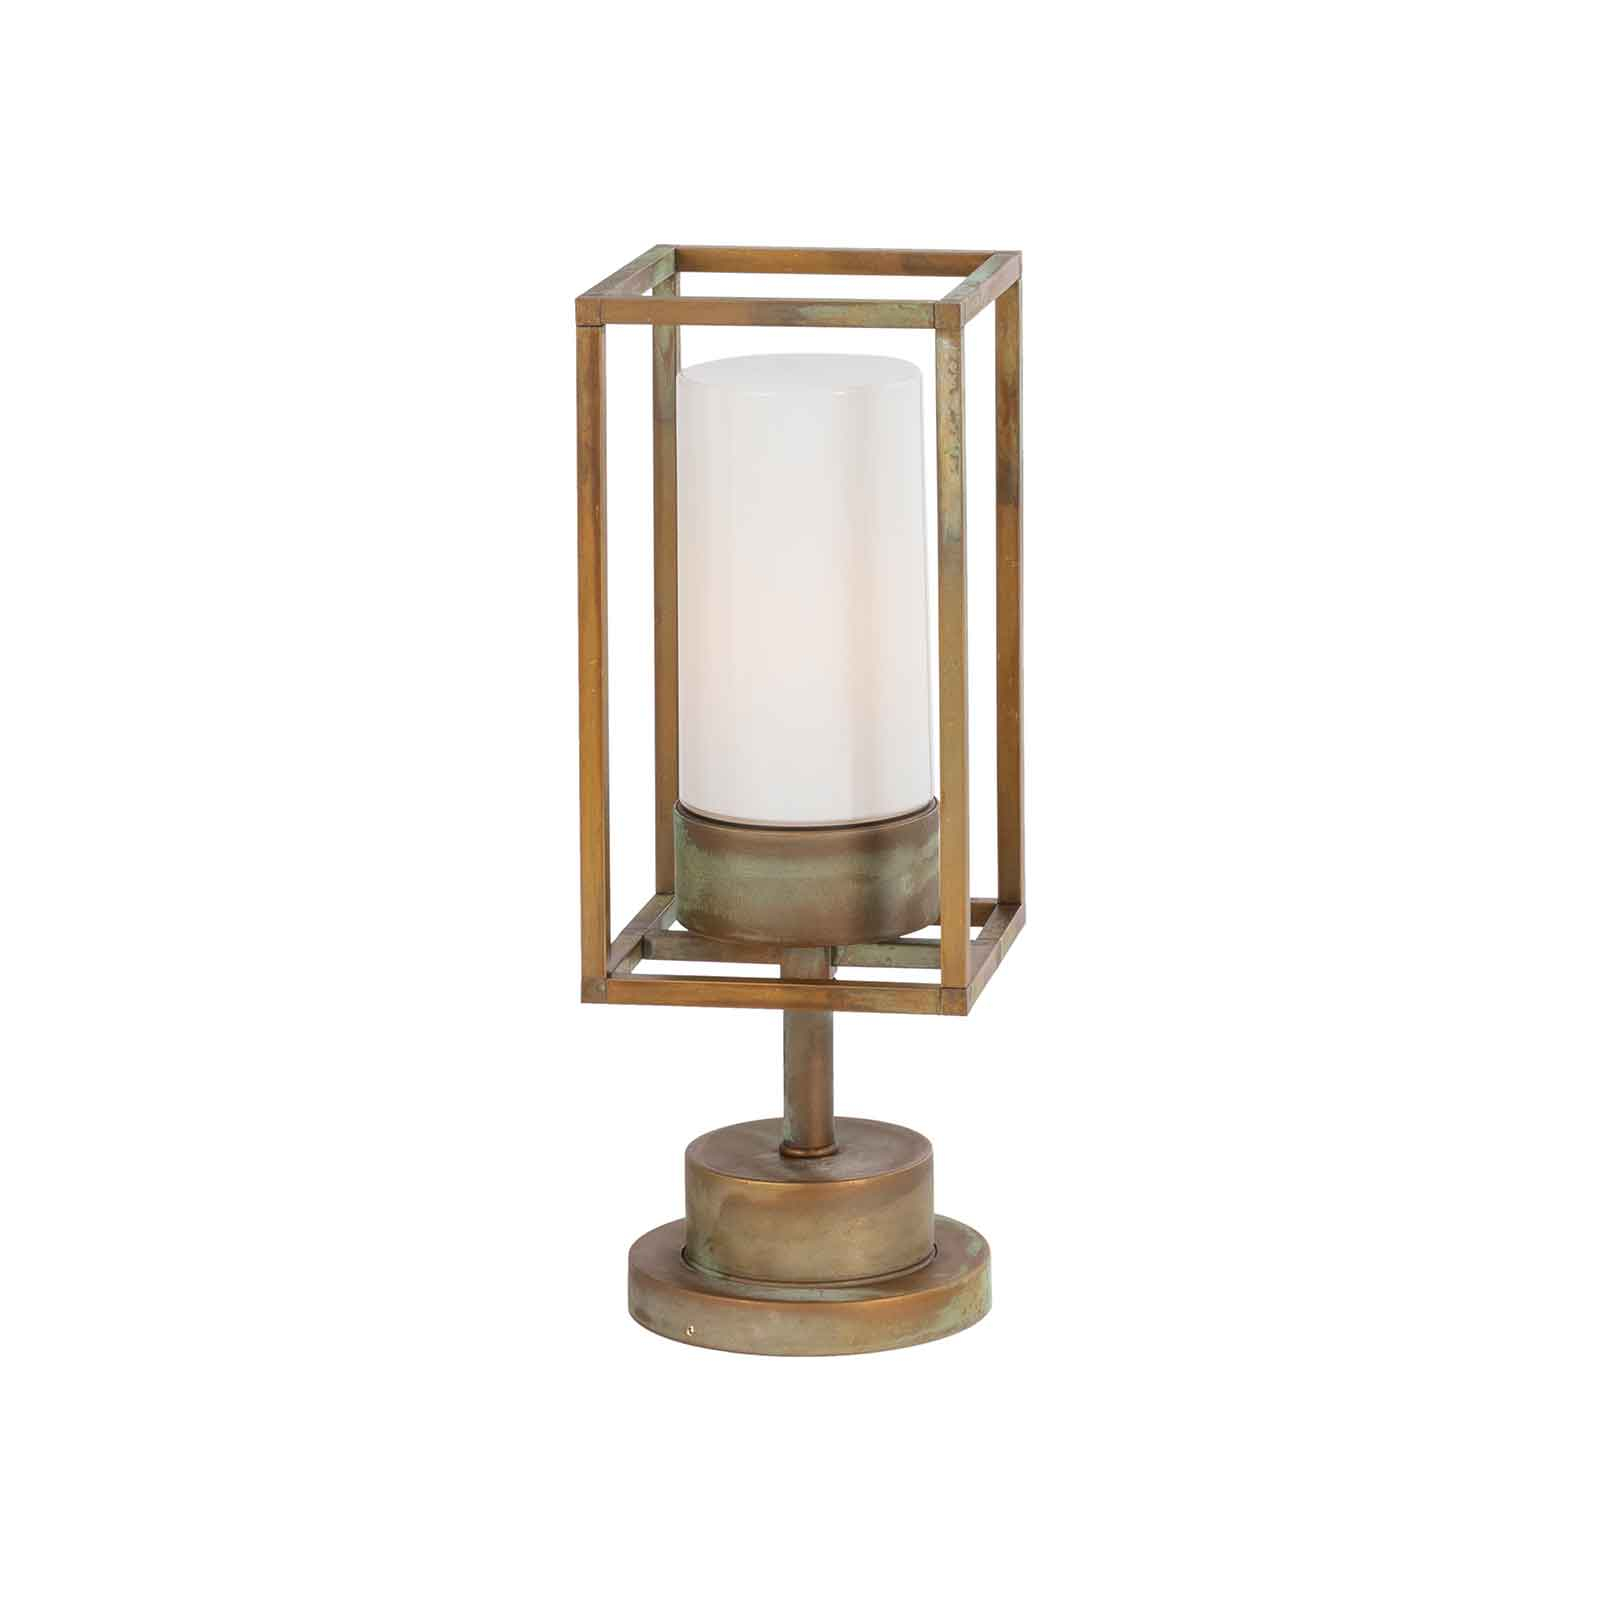 Cubic³ 3369 pillar light antique brass/opal